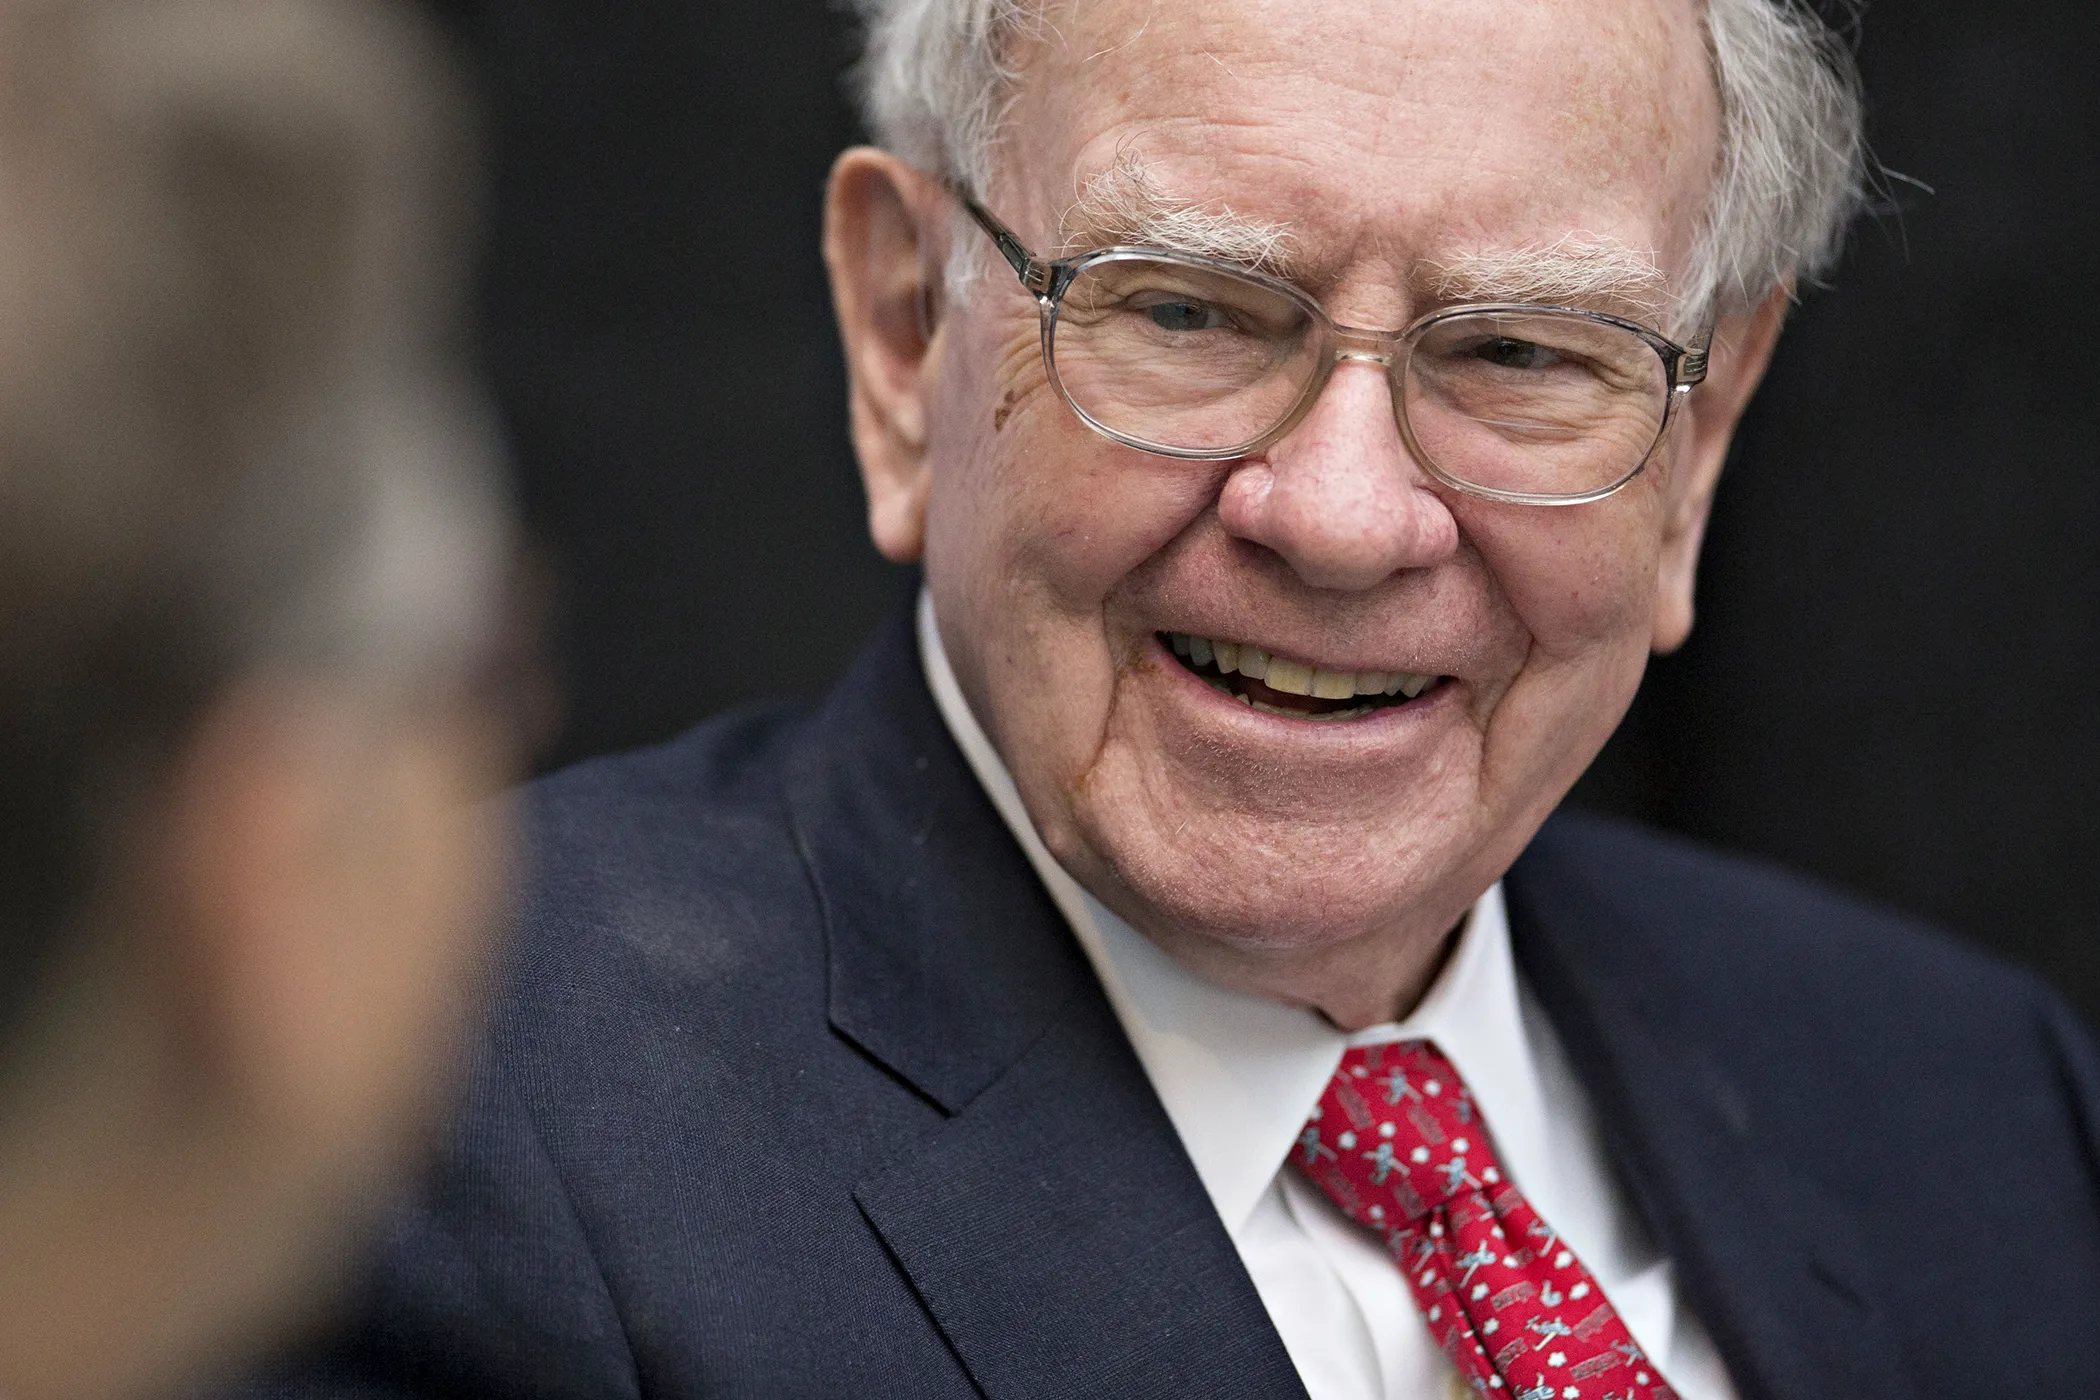 The Real Reason Warren Buffett Is Loading Up on Apple Stock